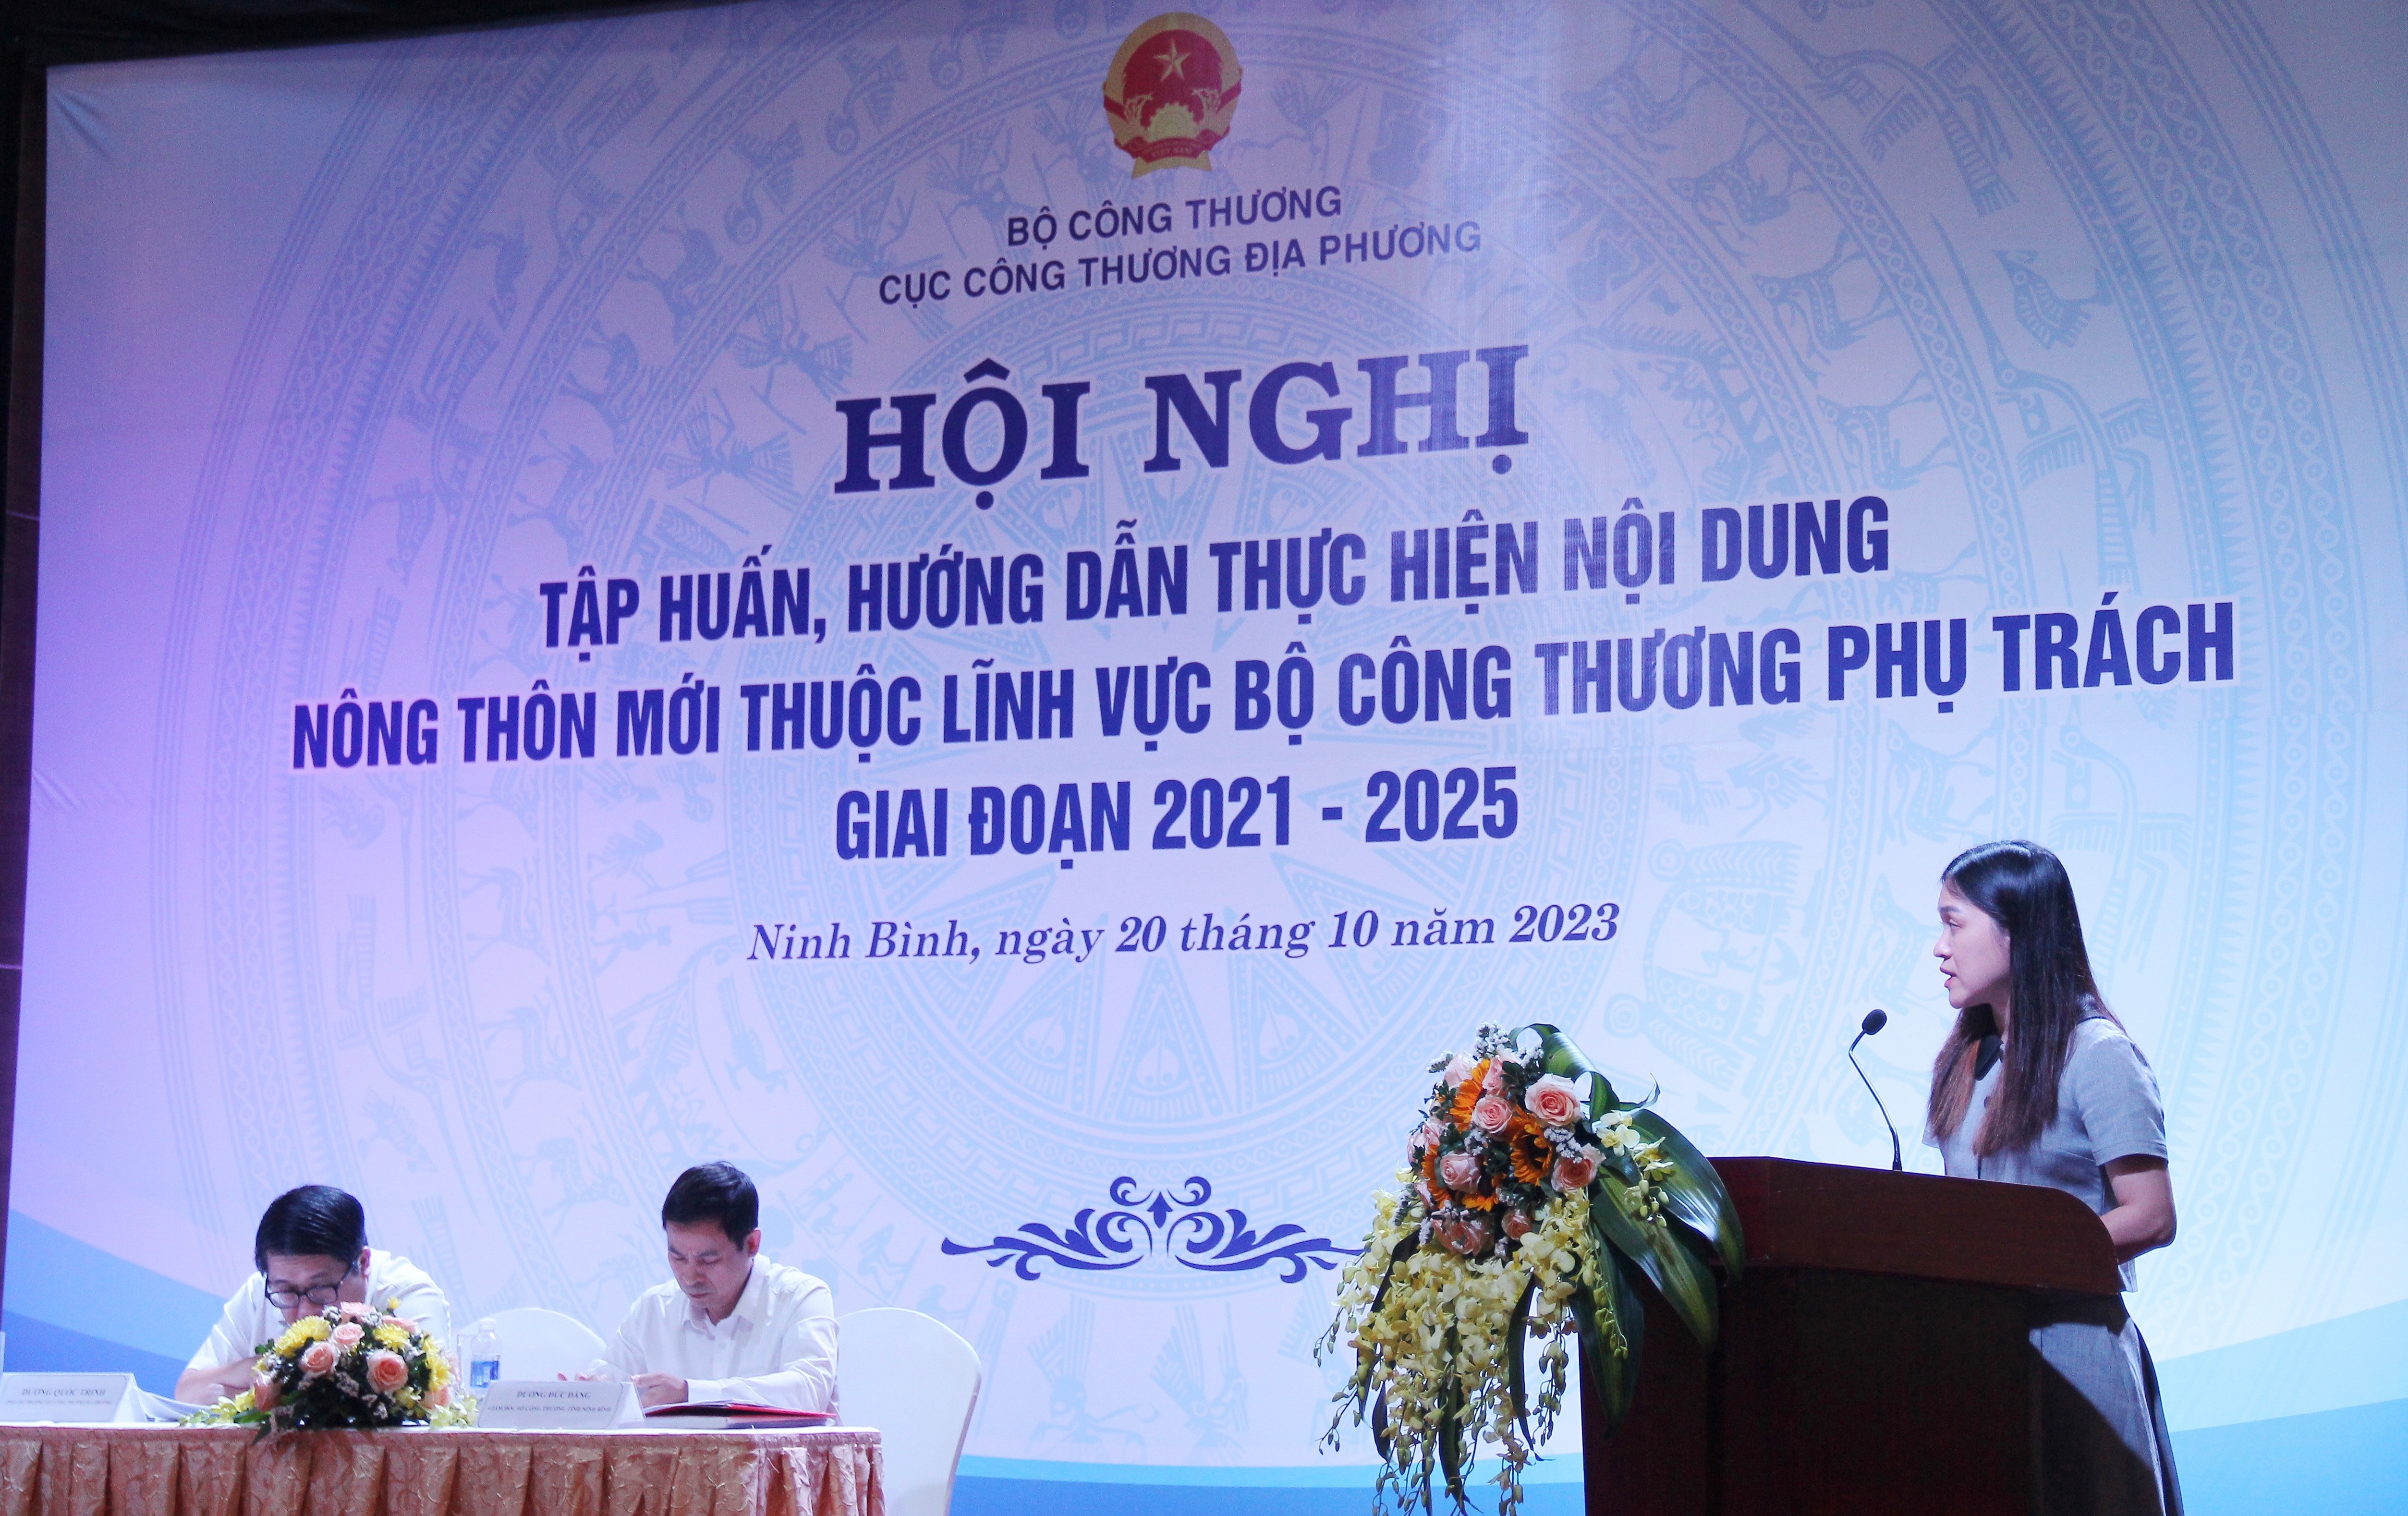  Bà Trần Hồng Nhung - Đại diện Phòng Quản lý cụm công nghiệp, Cục CTĐP